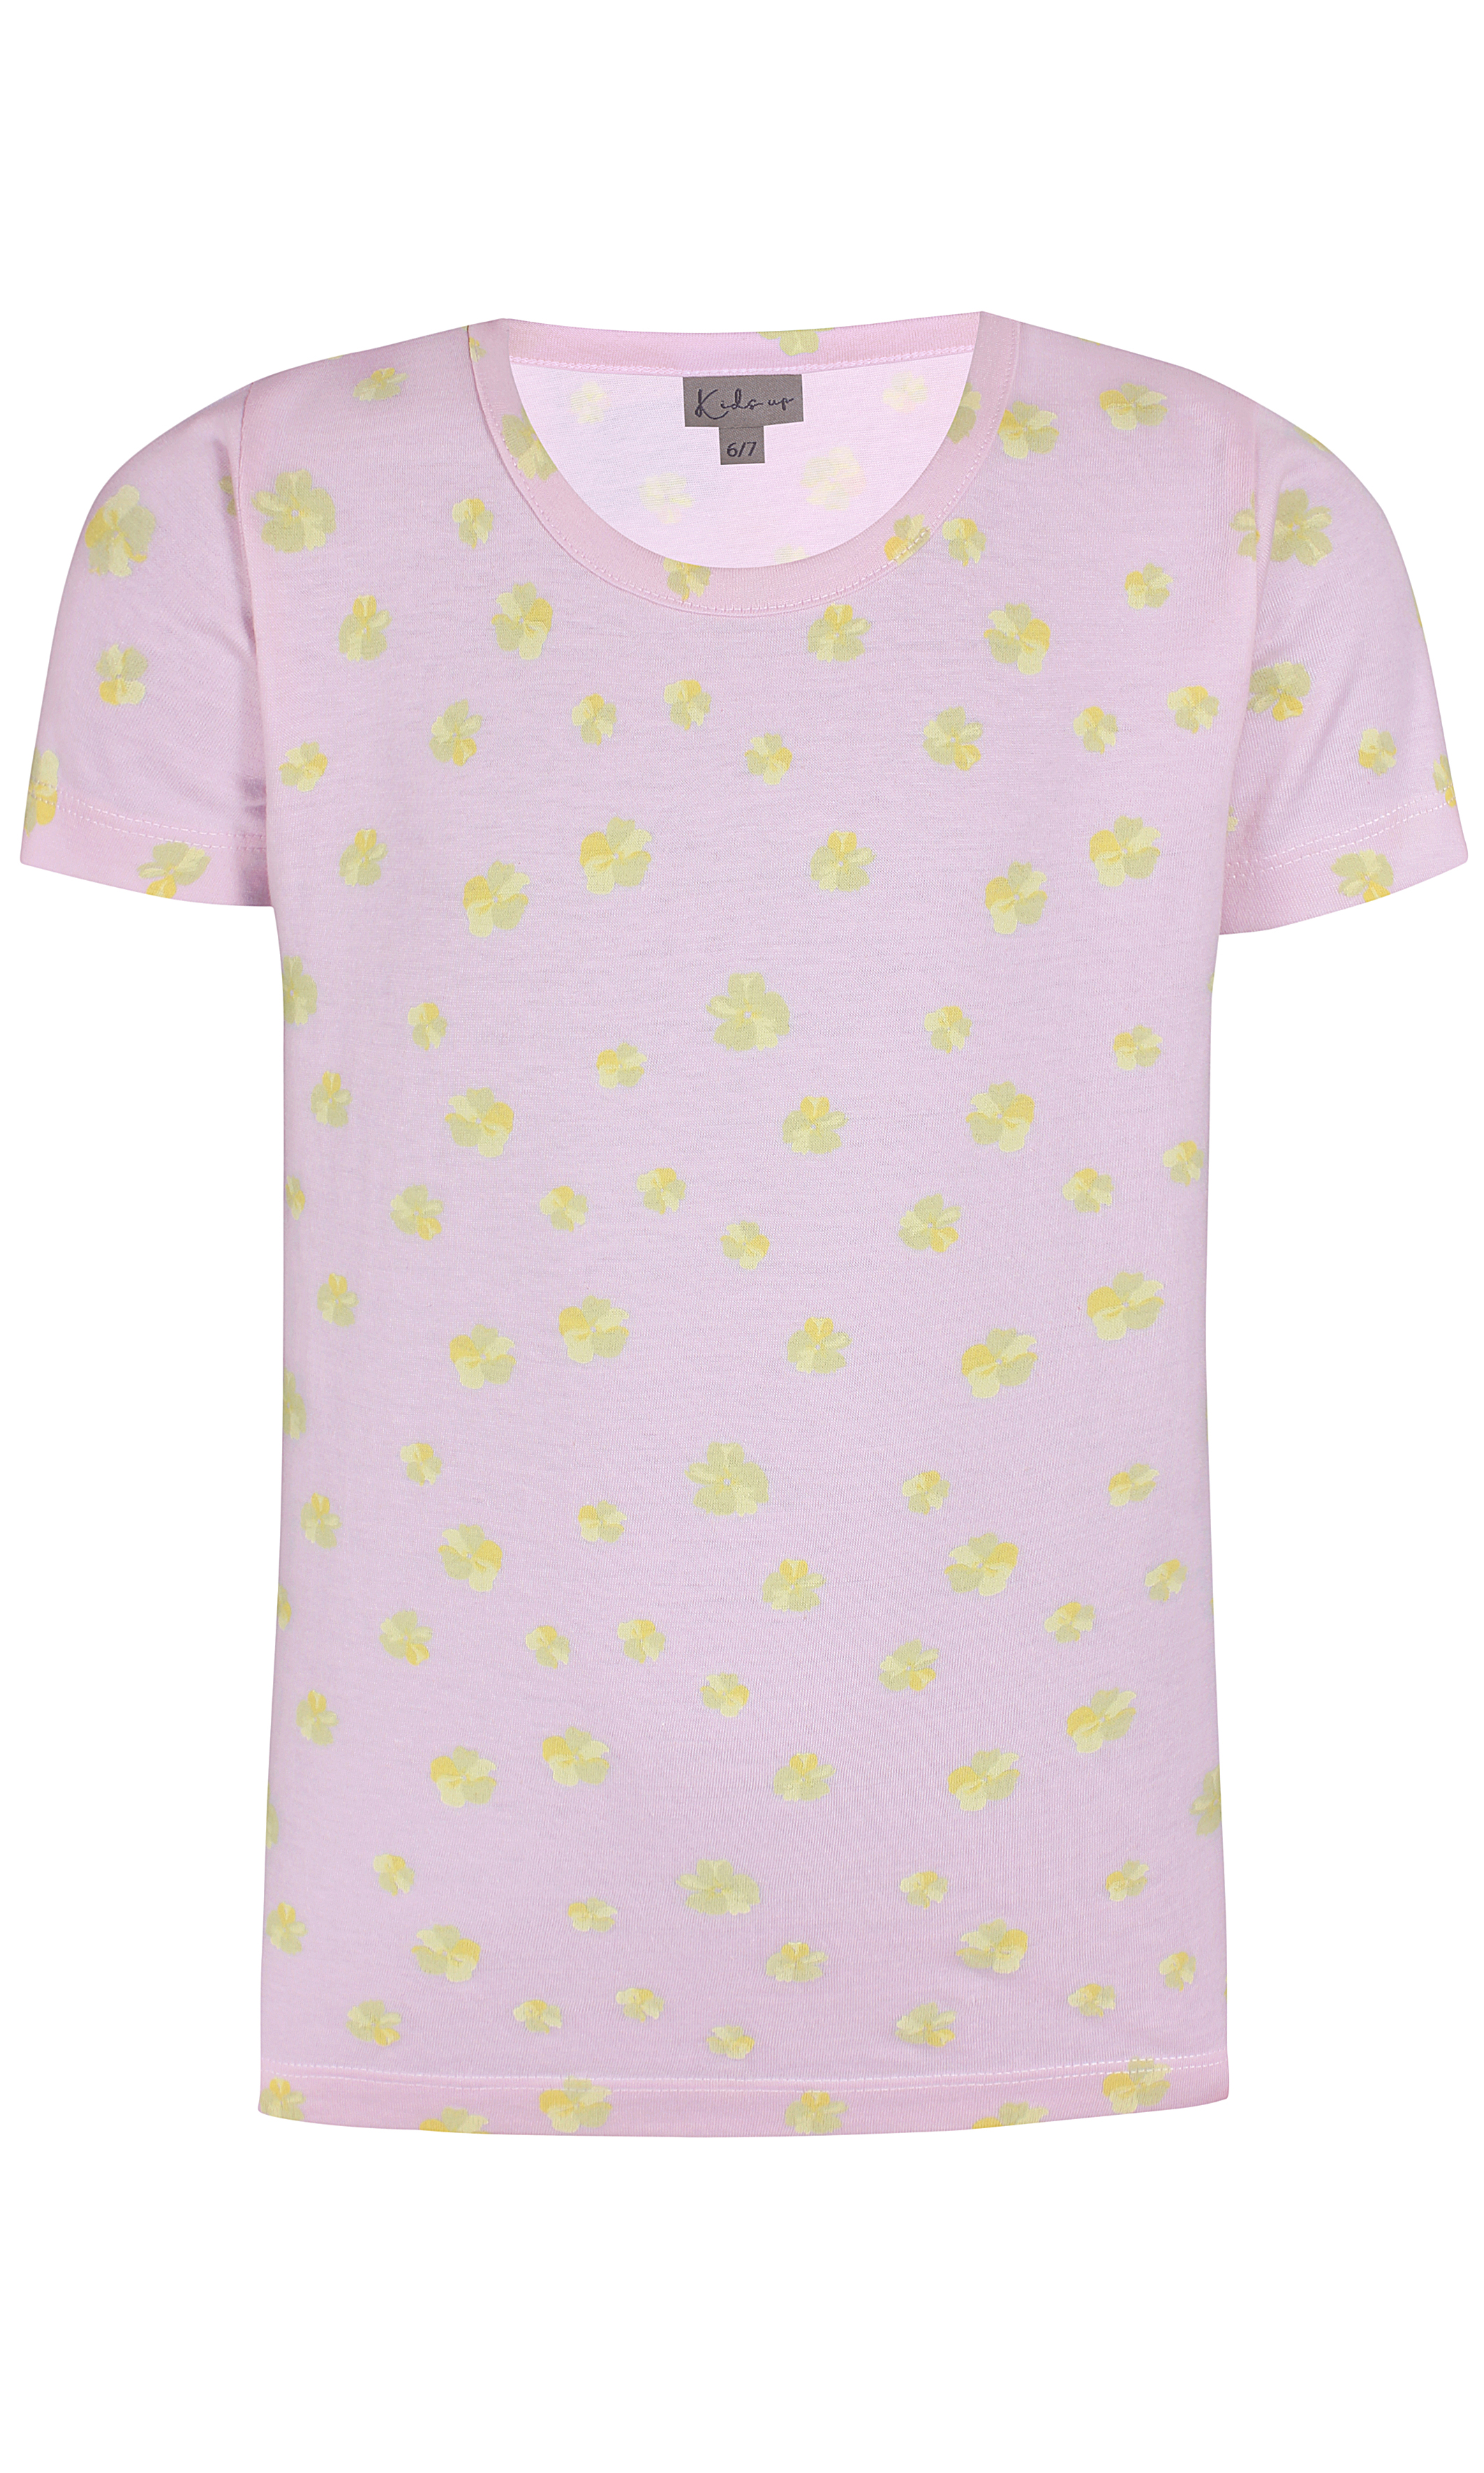 væg Skuffelse Krudt Kids Up – Super smart t-shirt med korte ærmer - Rosa - Mærker - IsaDisaKids